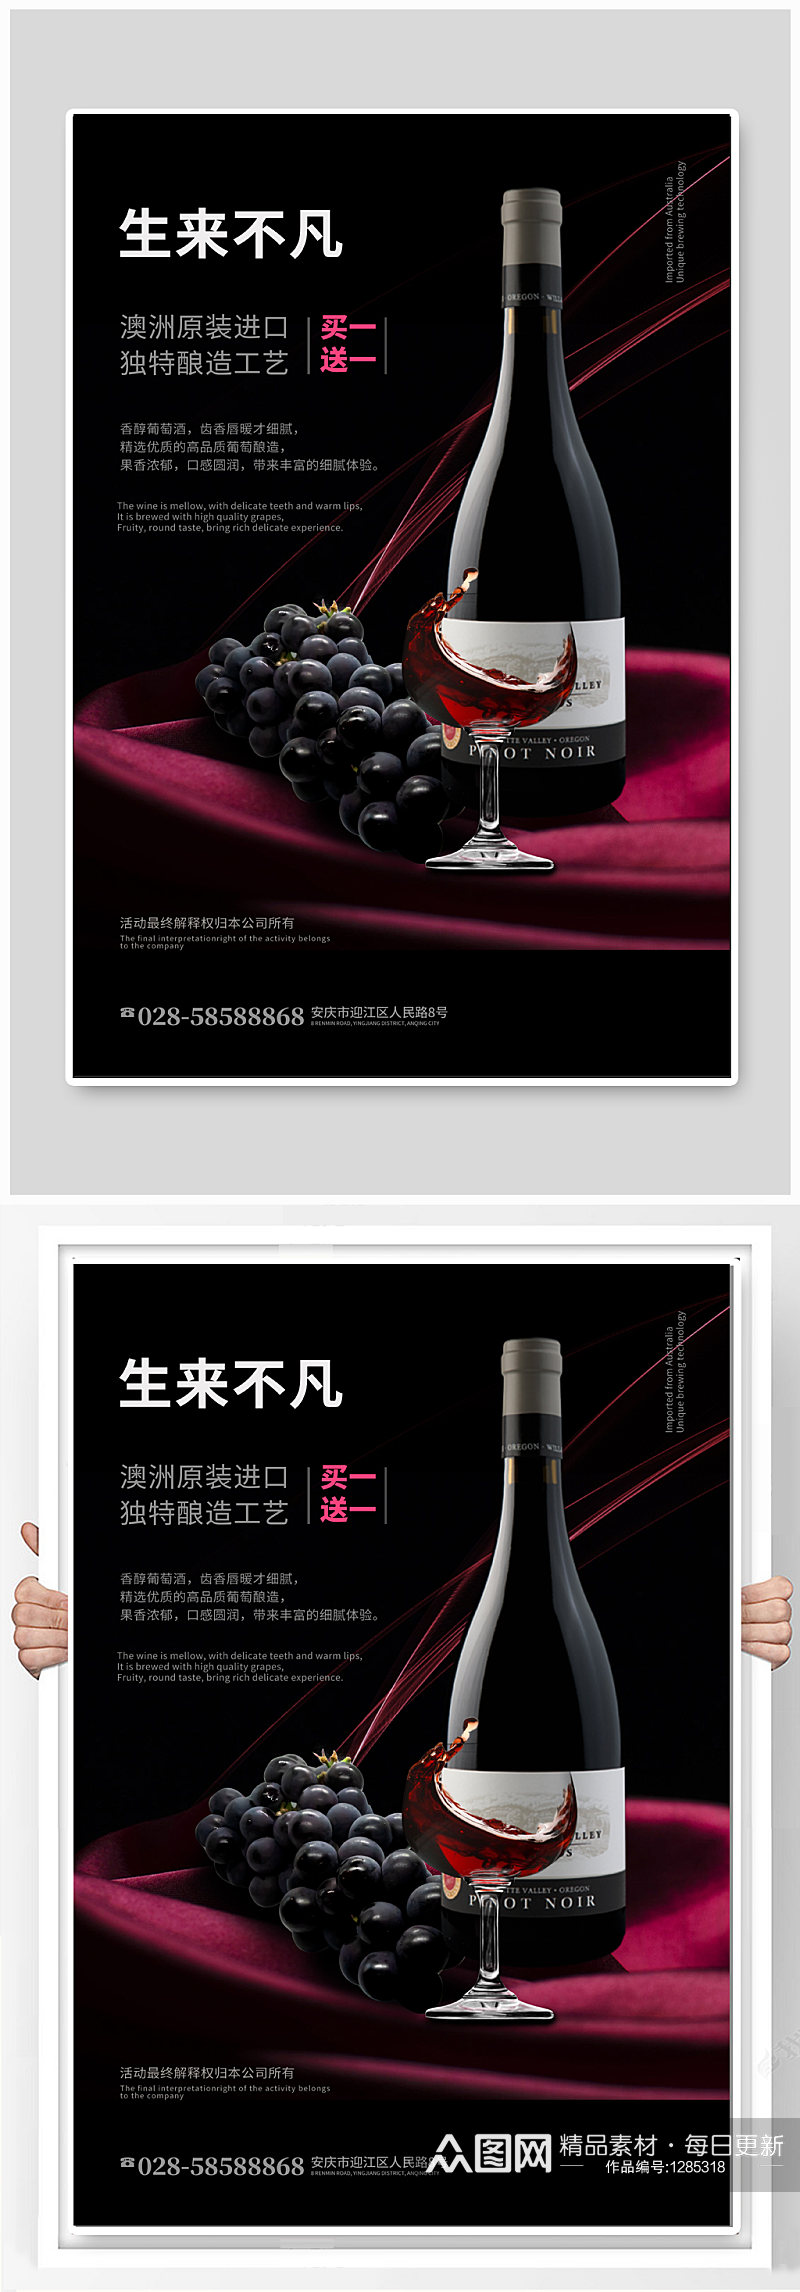 红酒葡萄酒文化宣传海报素材